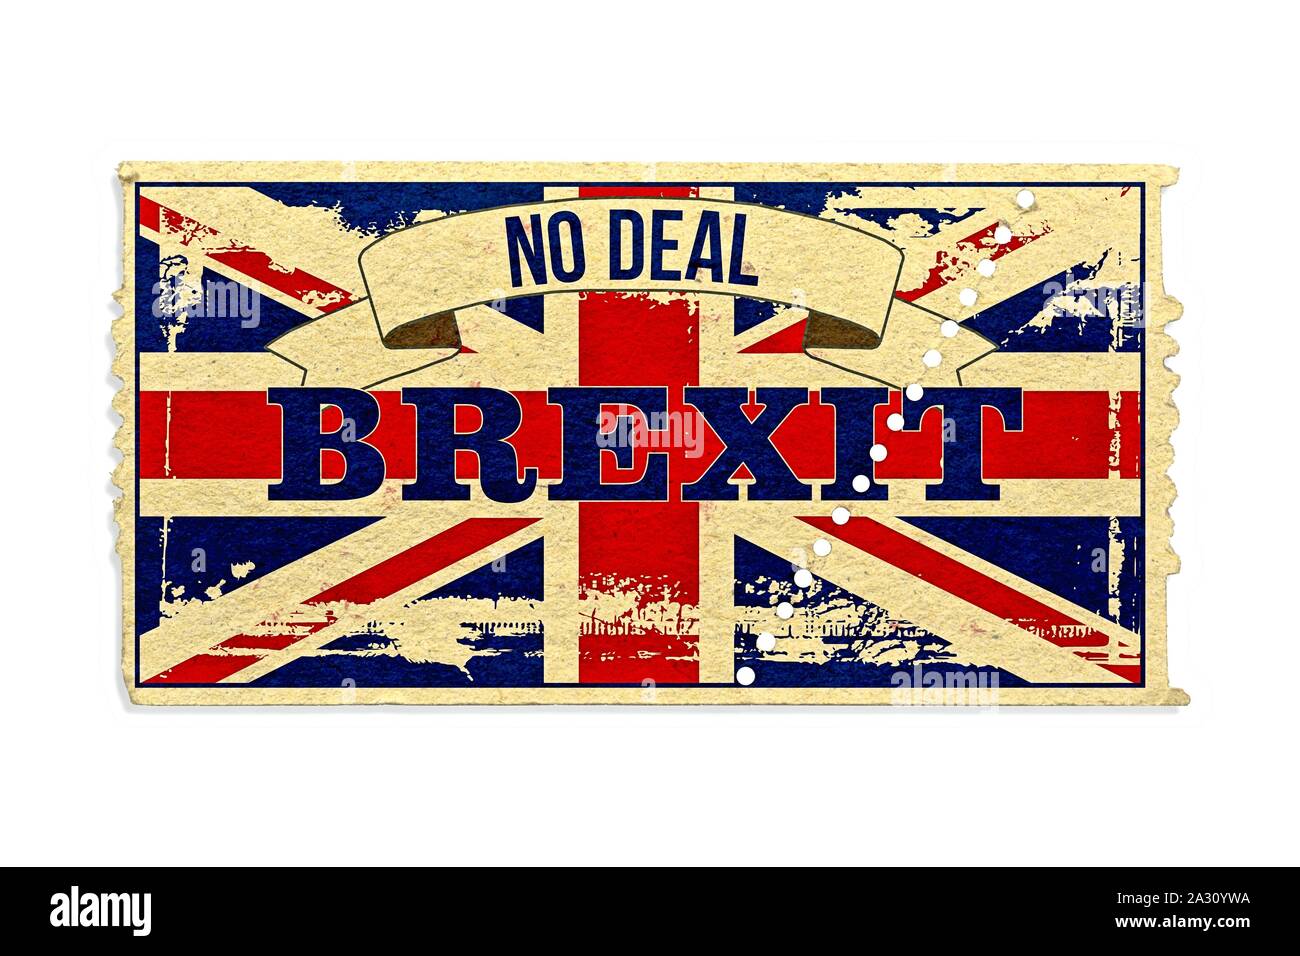 Image symbolique de la prochaine BREXIT le 31.10.2019. L'Union Jack sur un billet papier avec les rayures et les mots "No Deal" et les mots "BREXIT'. Les Britanniques ne veulent pas accepter l'accord négocié actuellement et peut-être quitter l'UE sans contrat. Dans le monde d'utilisation | Banque D'Images